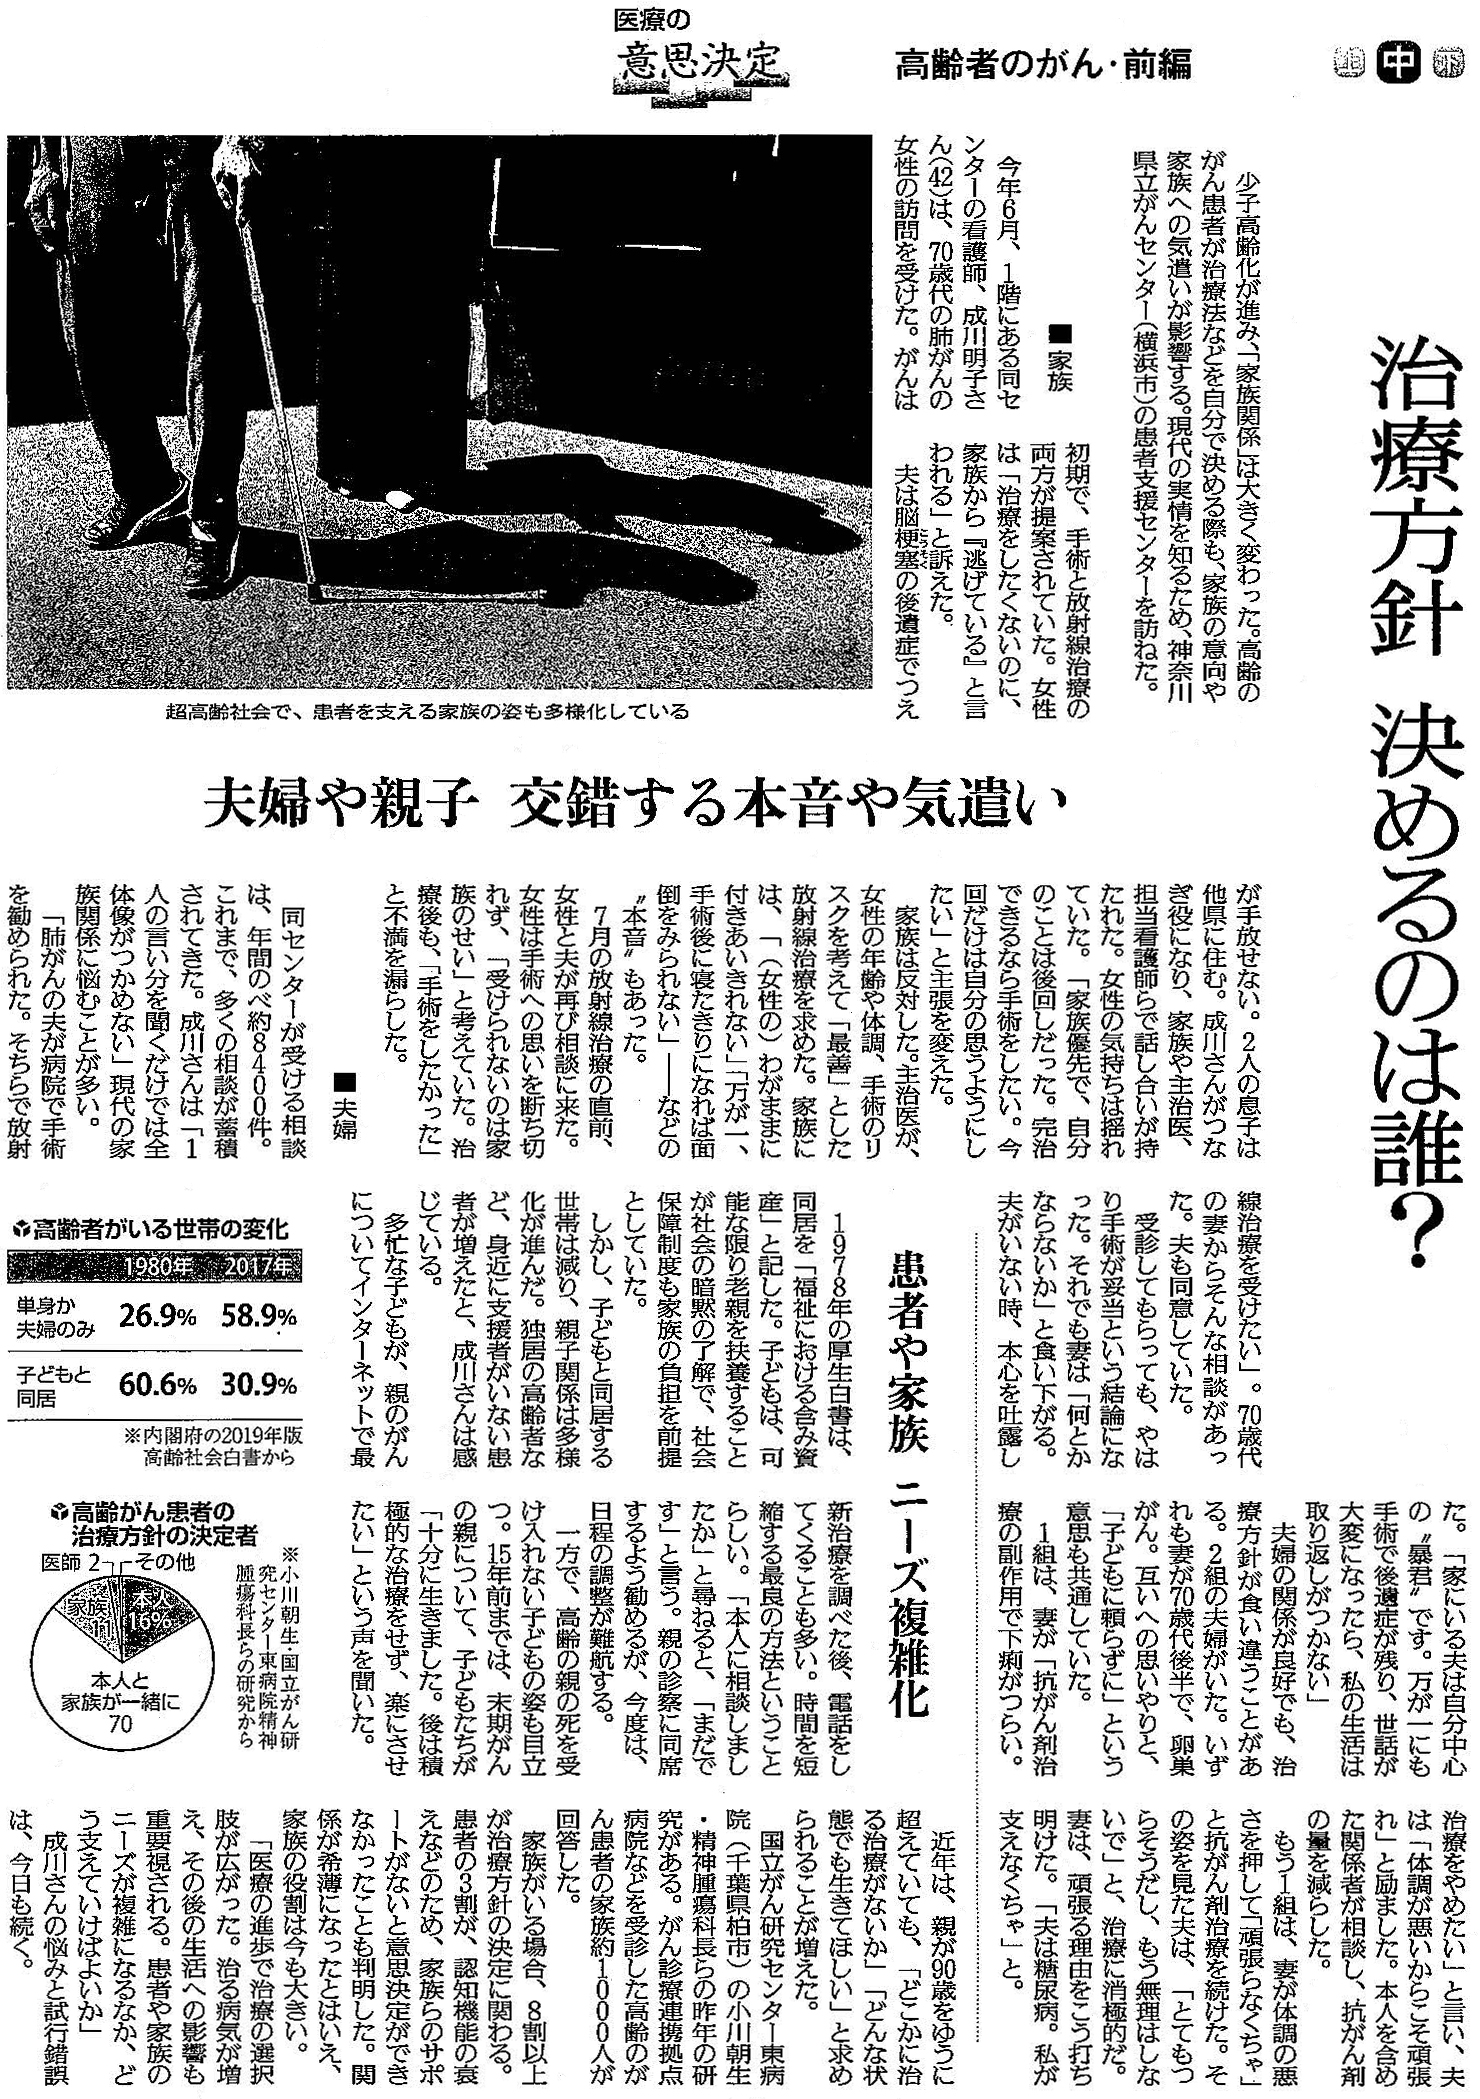 読売新聞 2019年10月29日掲載記事